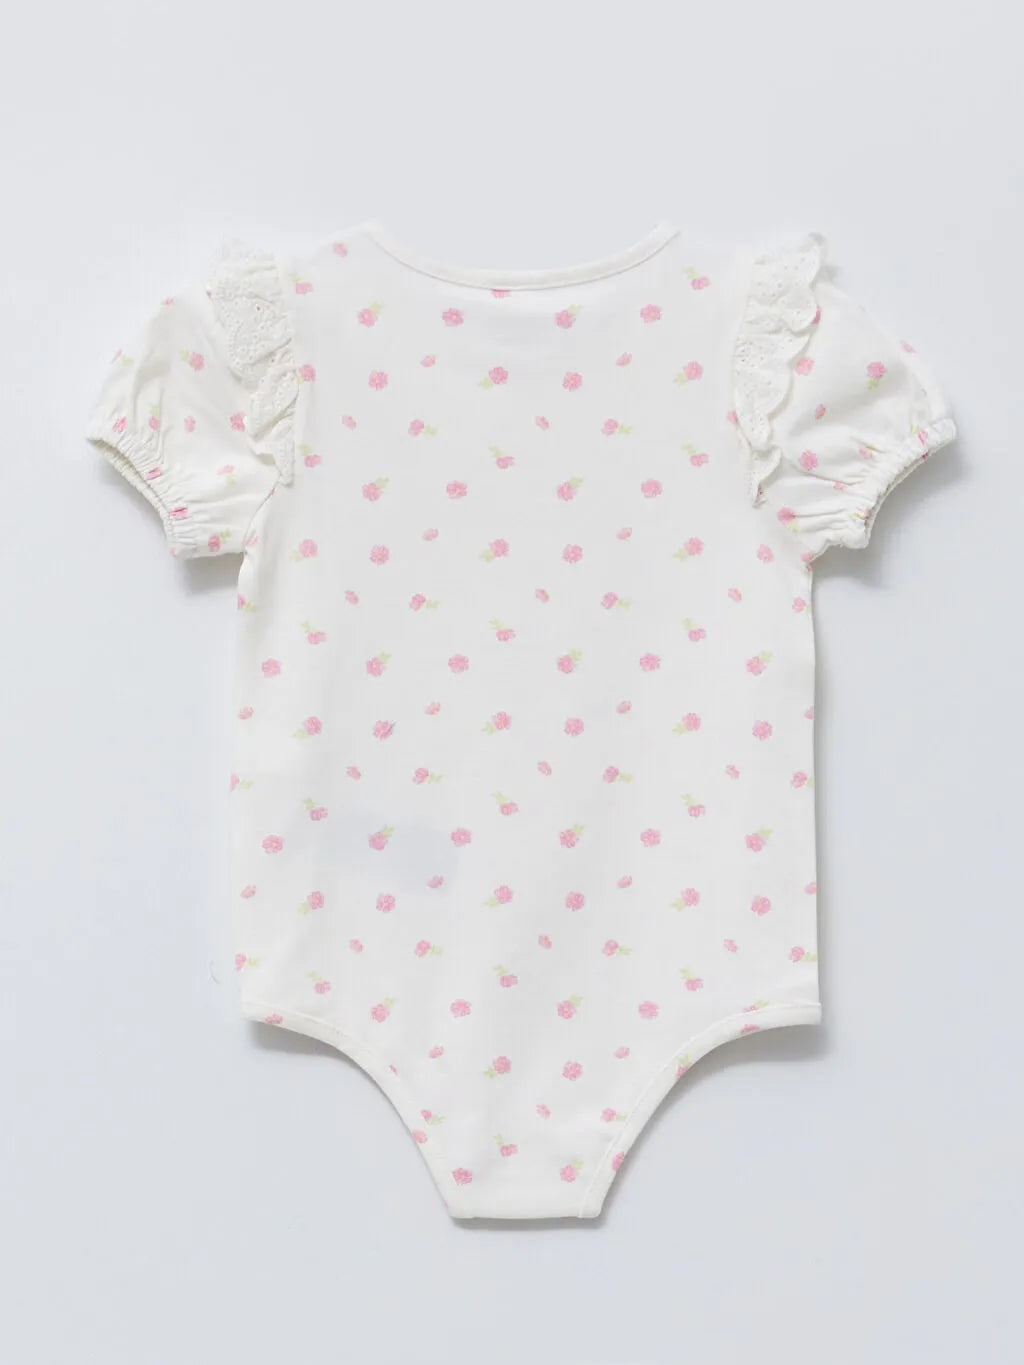 Crew Neck Short Sleeve Printed Cotton Baby Girl Snap Button Body